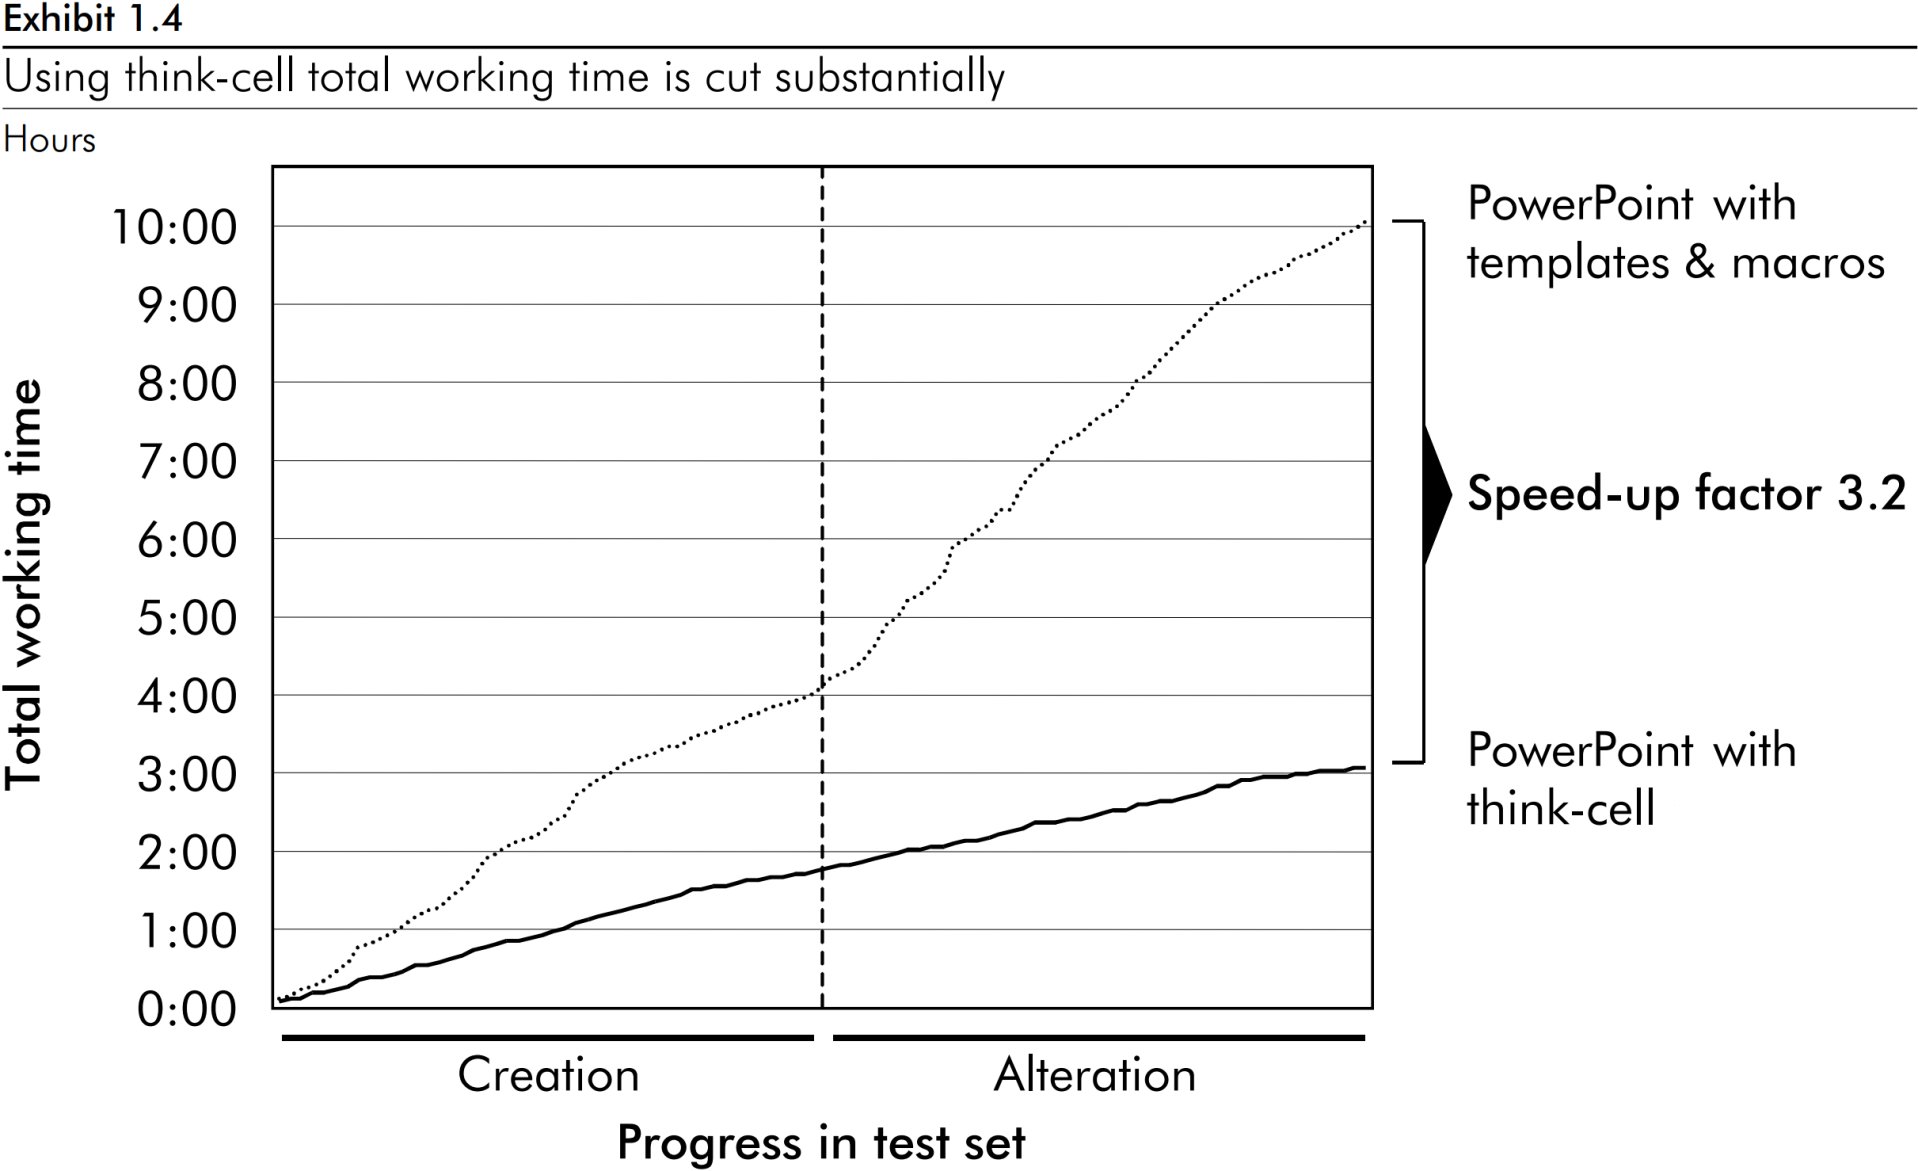 think-cell을 사용한 총 차트 작업 시간에서 3.2배의 속도 향상 요인을 보여주는 꺾은선형 차트.